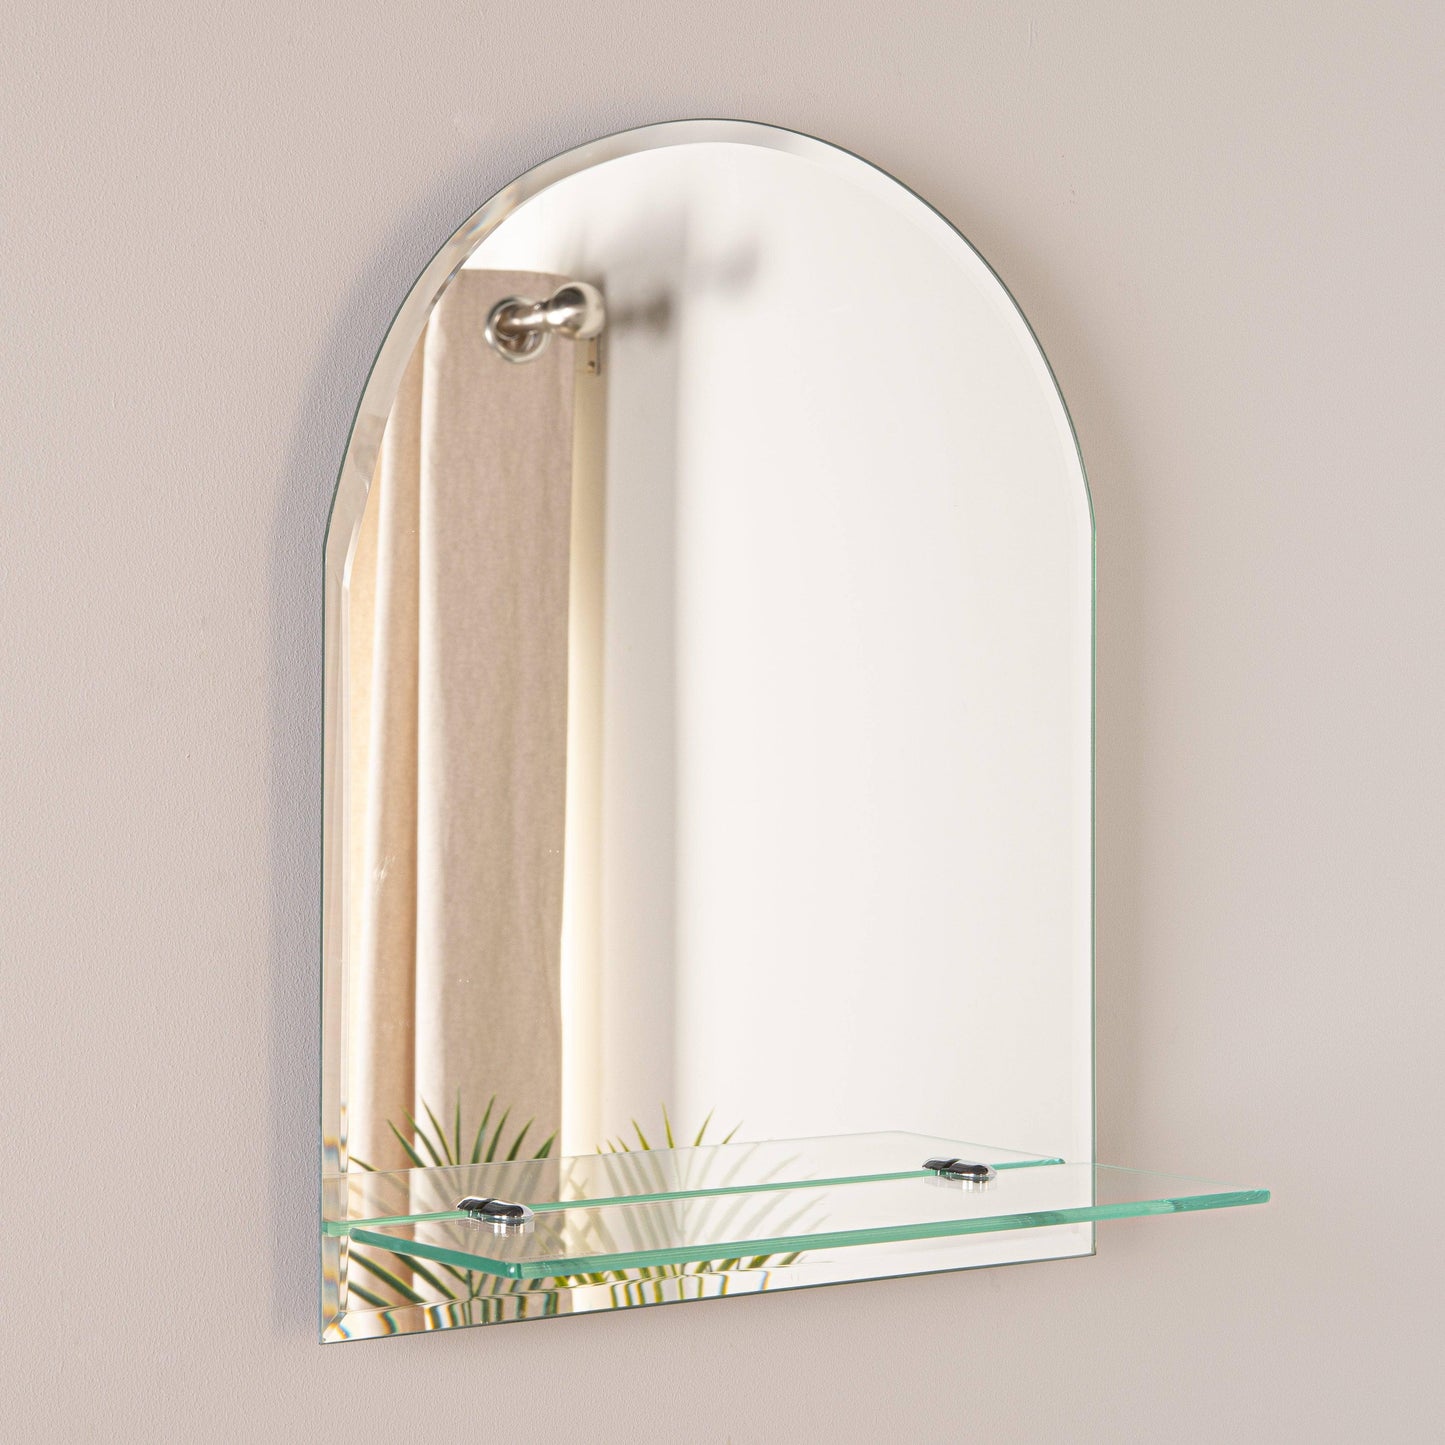 Mirrors  -  Euro Mirror/Shelf Round Top 50X40  -  50155663